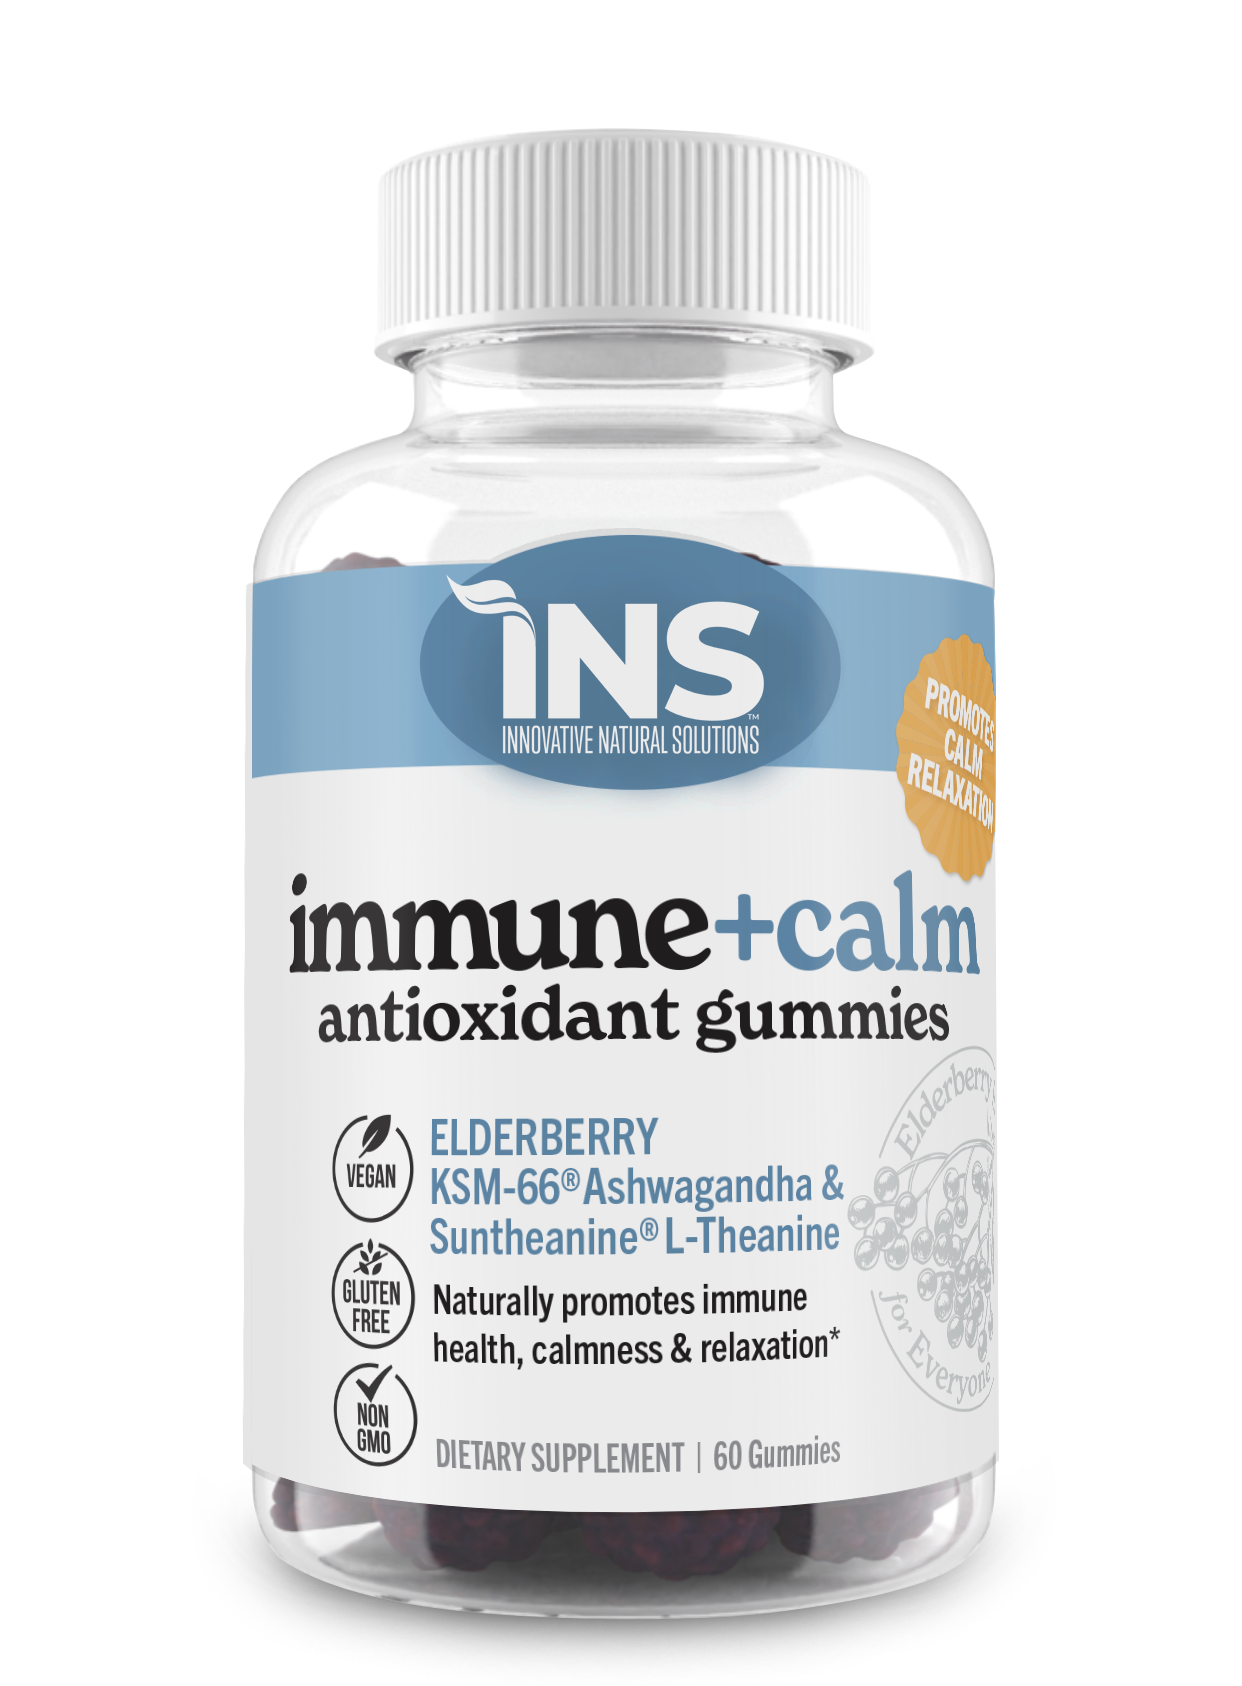 INS Immune+Calm Antioxidant Gummies